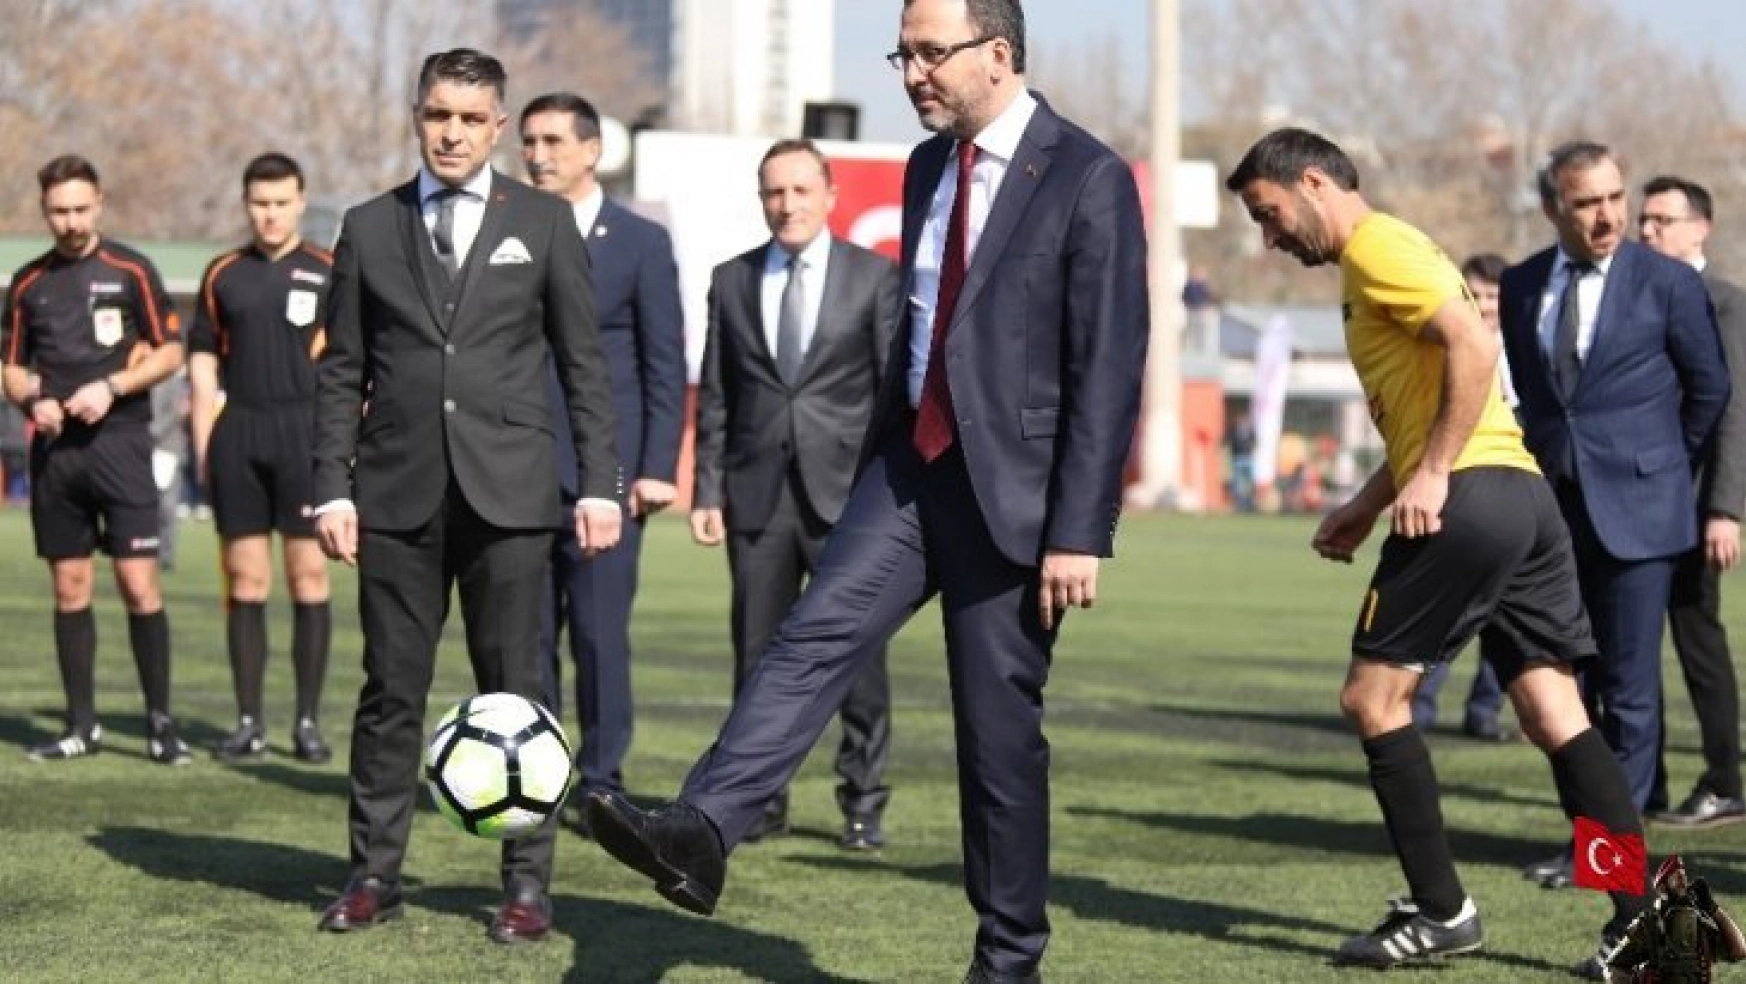 Bakan Kasapoğlu, Kamu Futbol Turnuvası'nın başlama vuruşunu yaptı